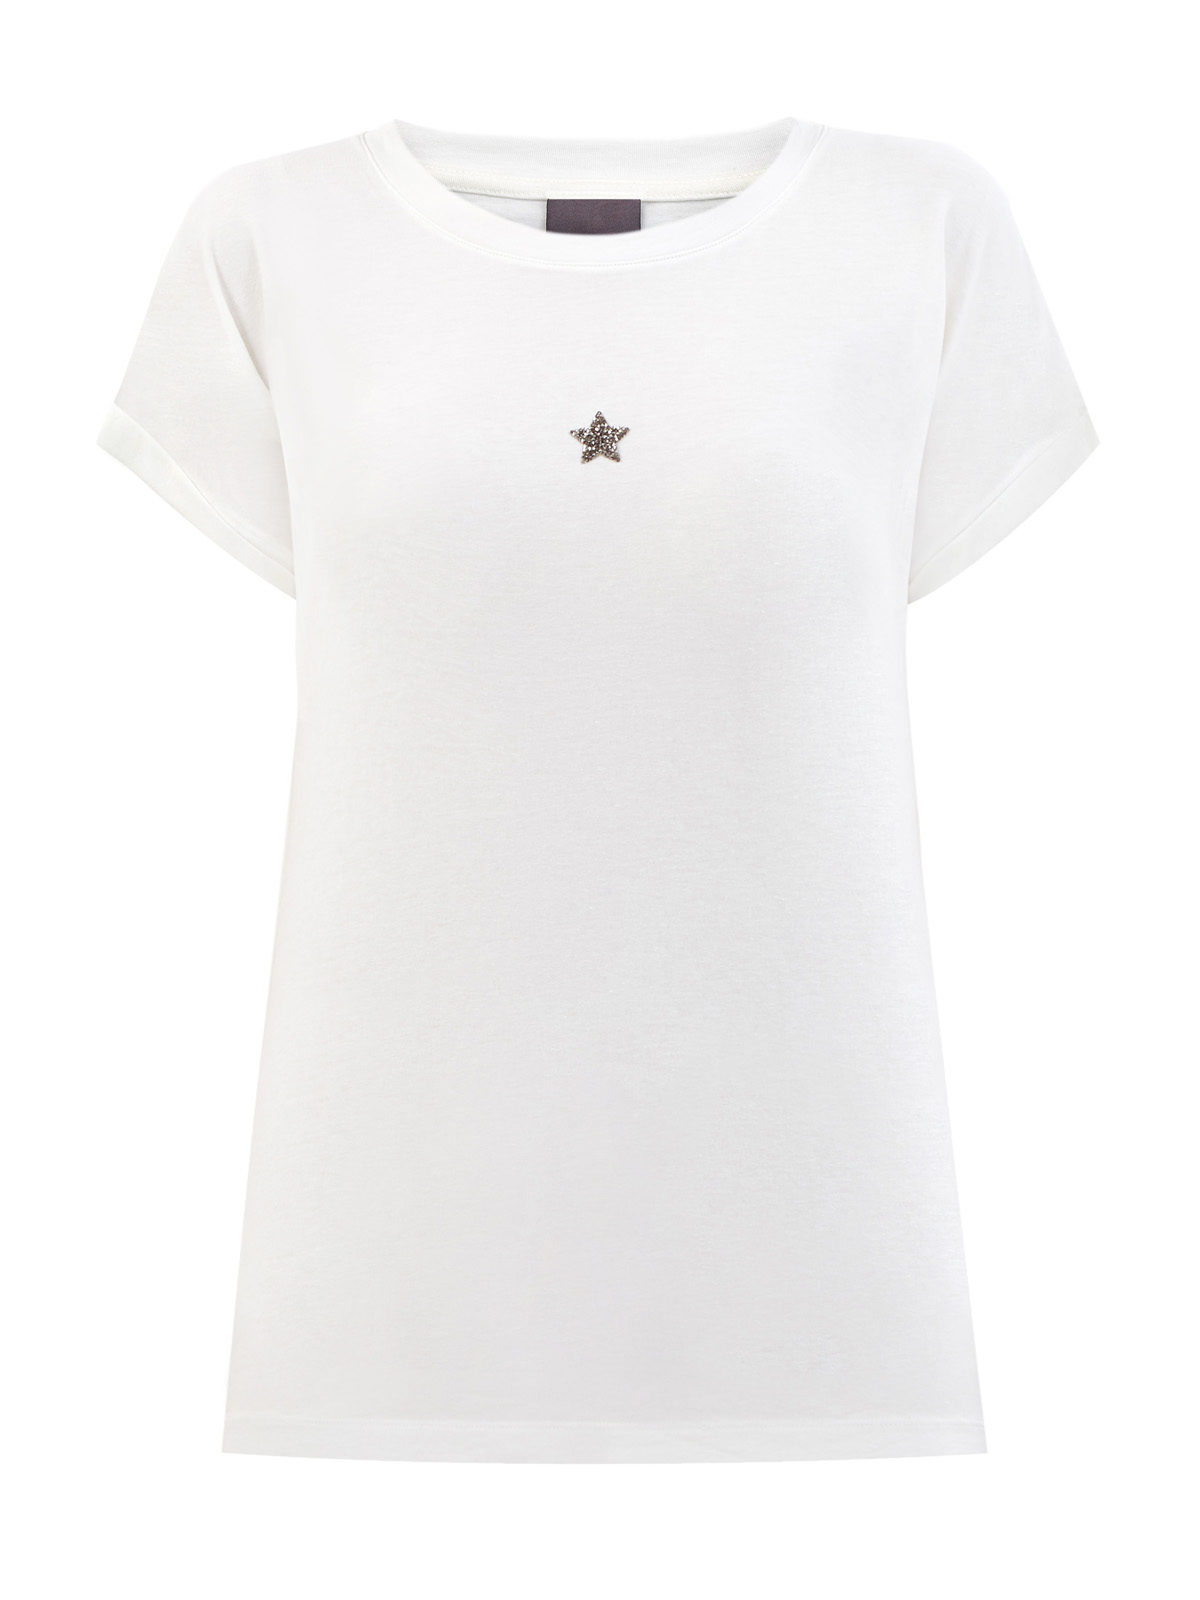 Хлопковая футболка с символикой из кристаллов Swarovski и логотипом LORENA ANTONIAZZI, цвет бежевый, размер 42;44;46;38;40 - фото 1